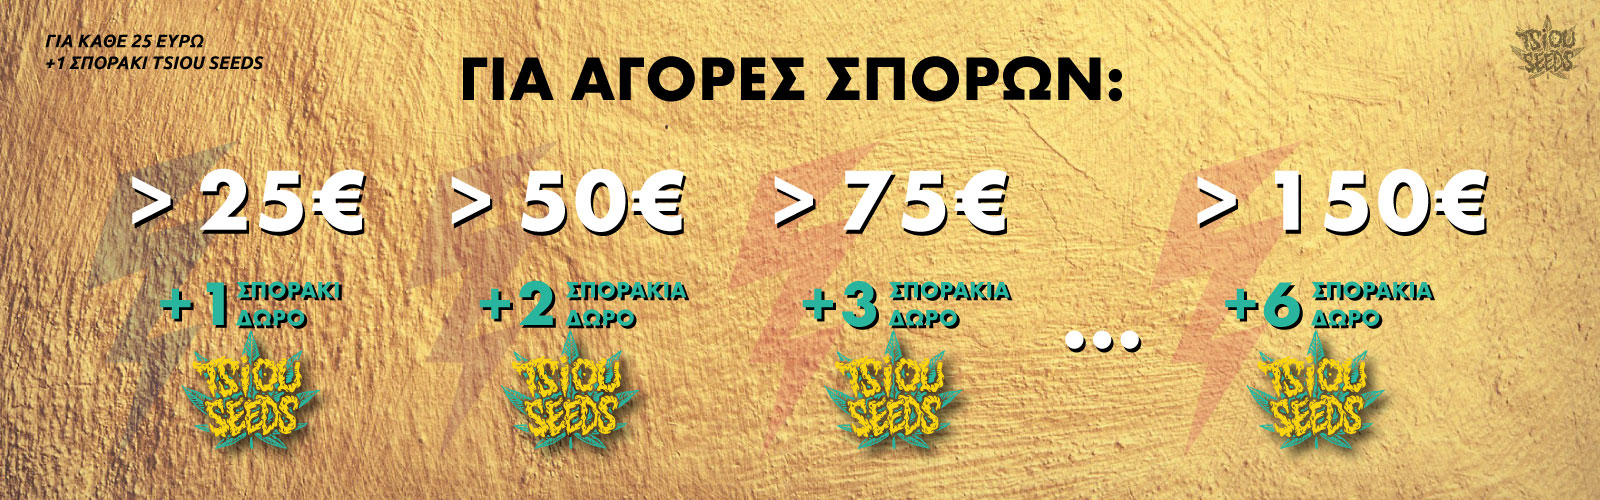 TsiouSeeds Offer - Δώρο 1 σποράκι για κάθε 25 ευρώ